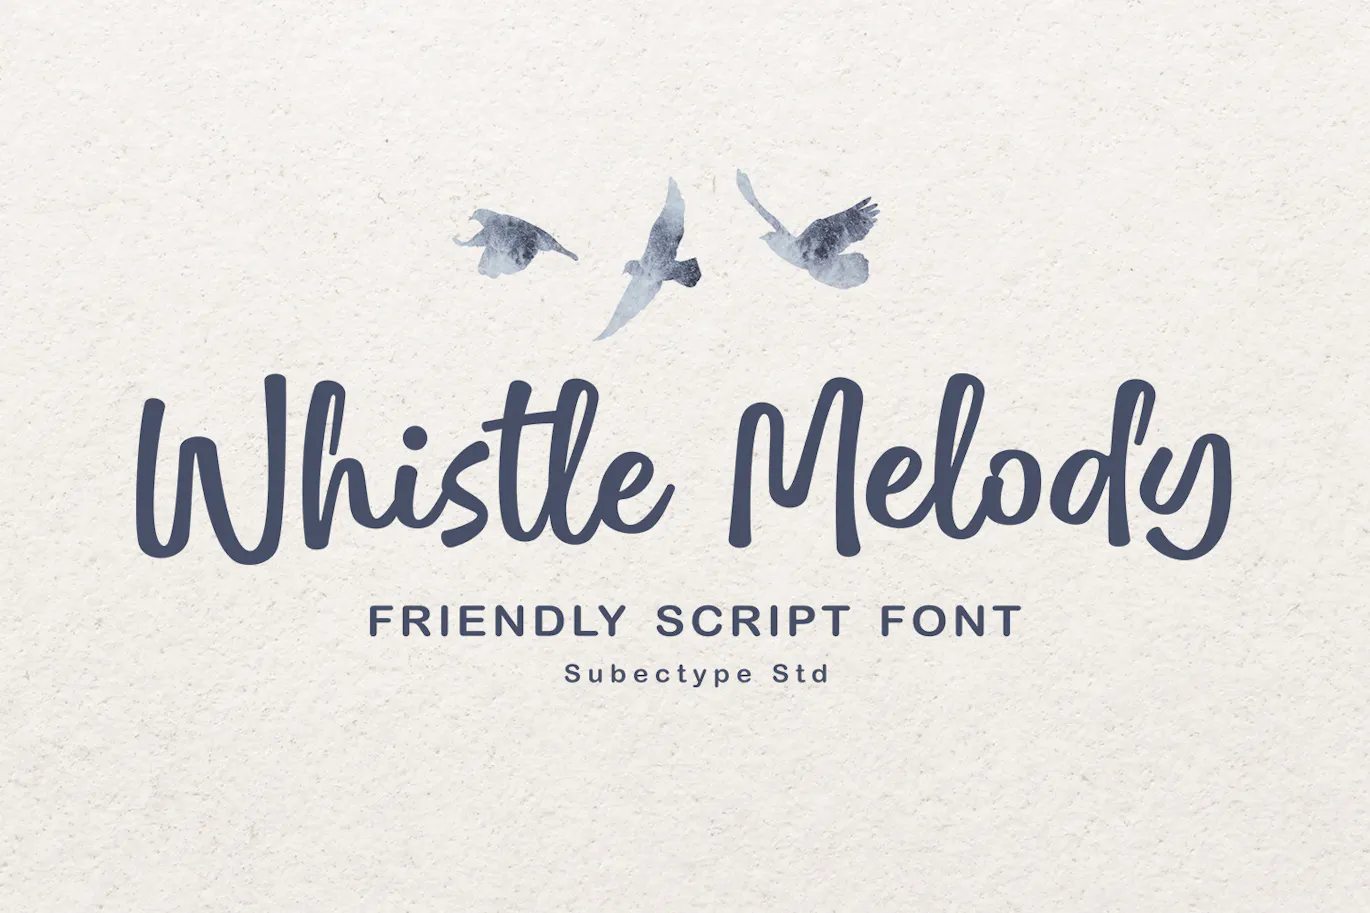 有趣的英文手写花体字体 - Whistle Melody 设计字体 第1张